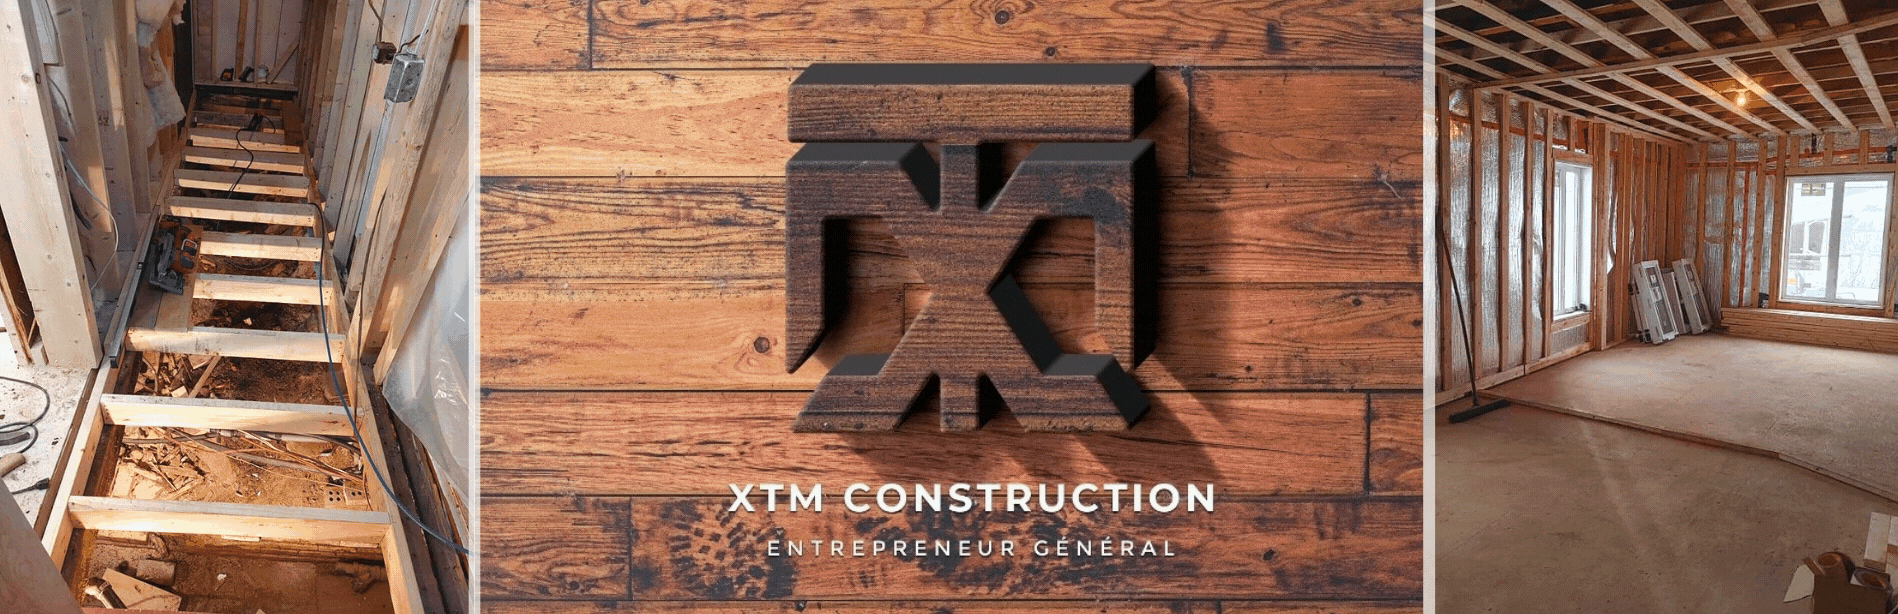 XTM Construction 1